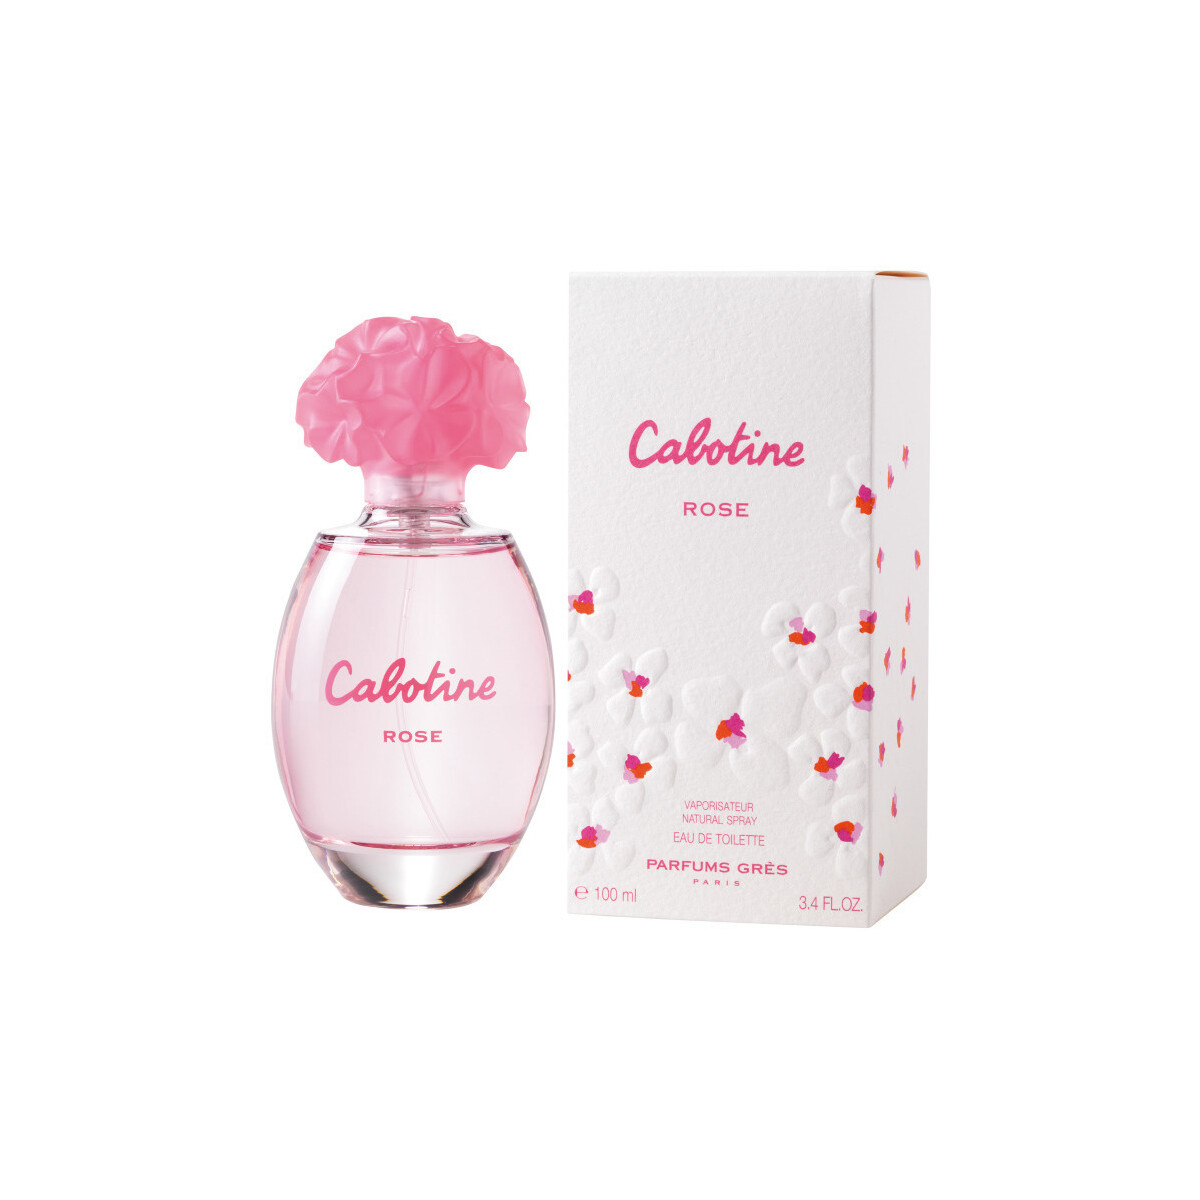 Beauté Femme Cologne Gres Cabotine Rose - eau de toilette - 100ml - vaporisateur Cabotine Rose - cologne - 100ml - spray